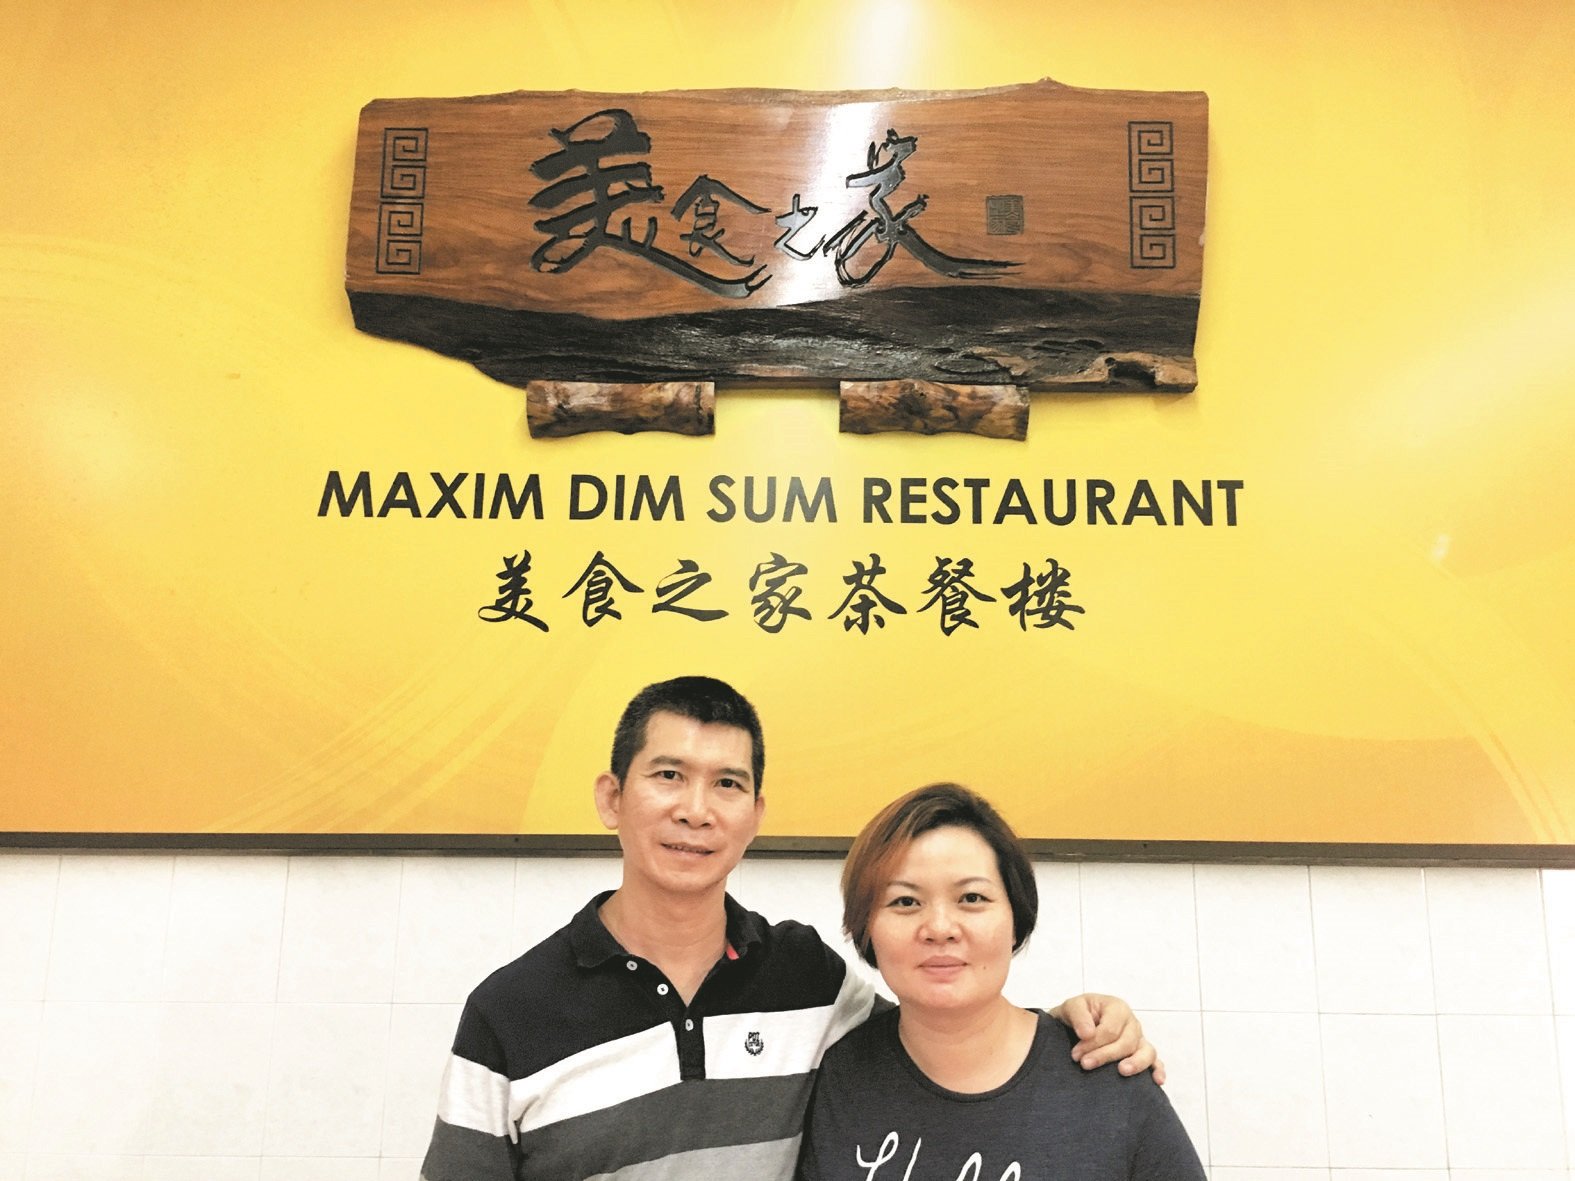 冯克成（左起）与陈美云夫妻档在点心界打出一片天，他们希望能够一直传承点心文化。